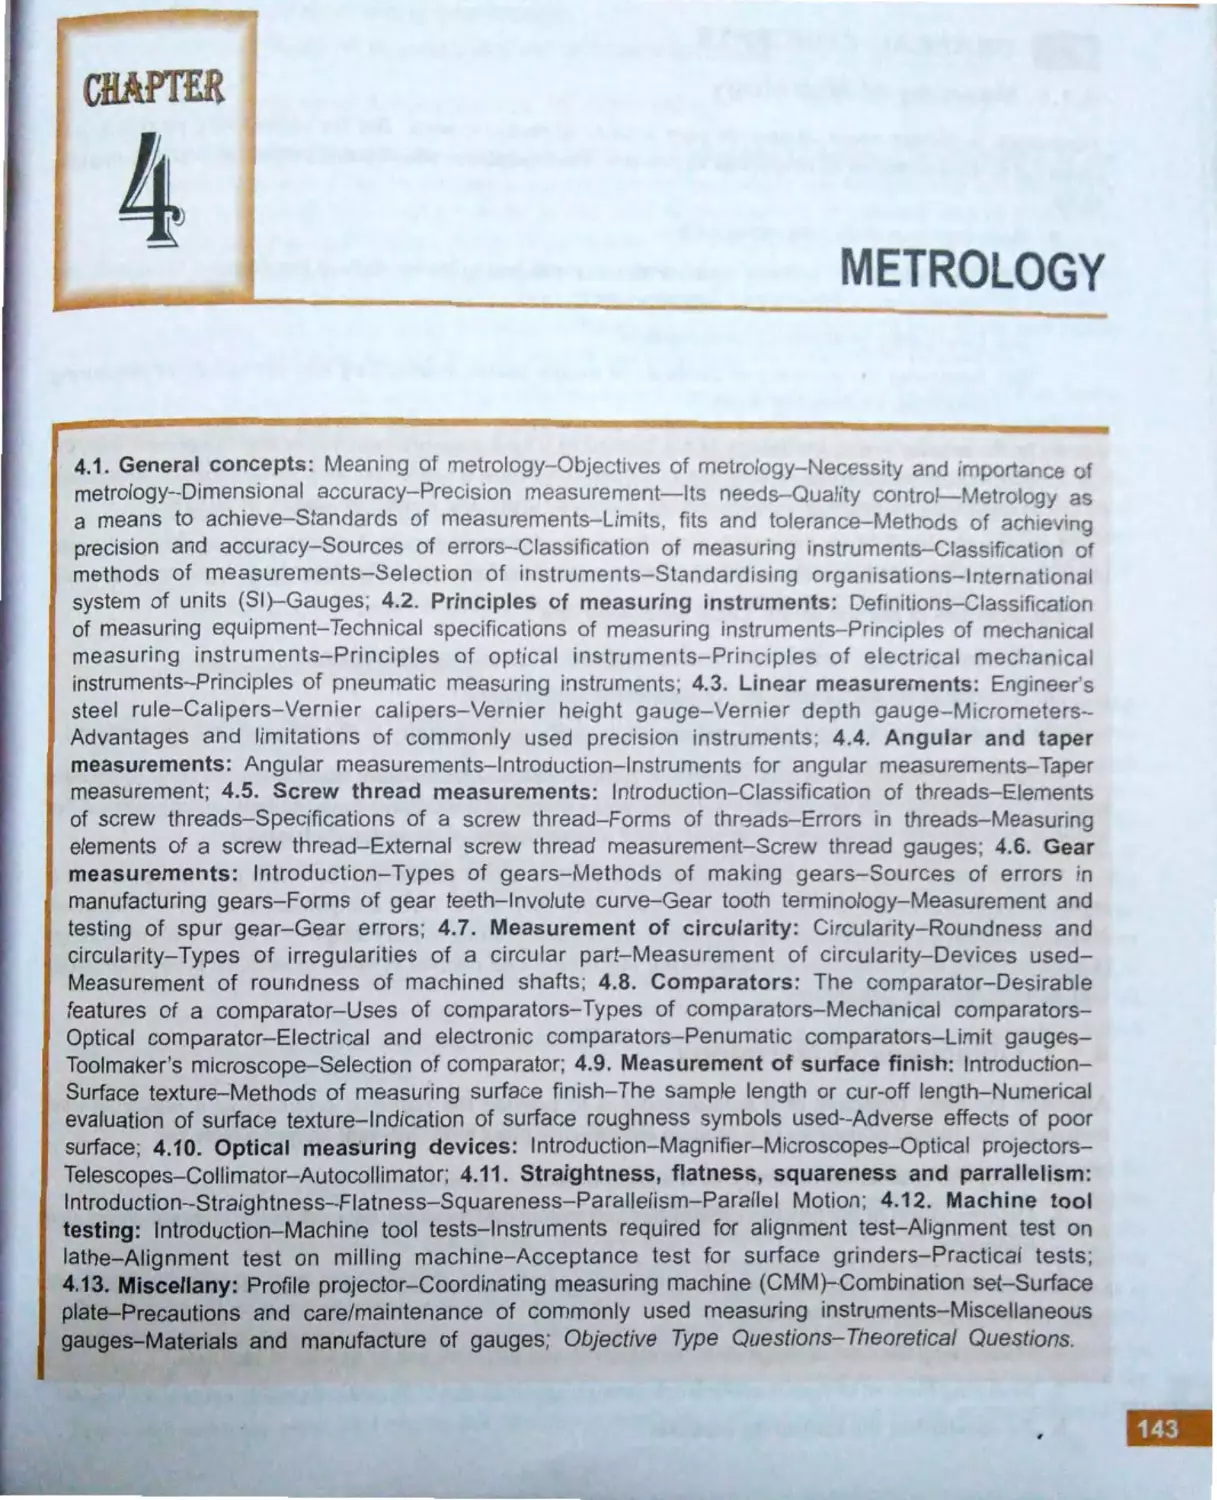 4. Metrology